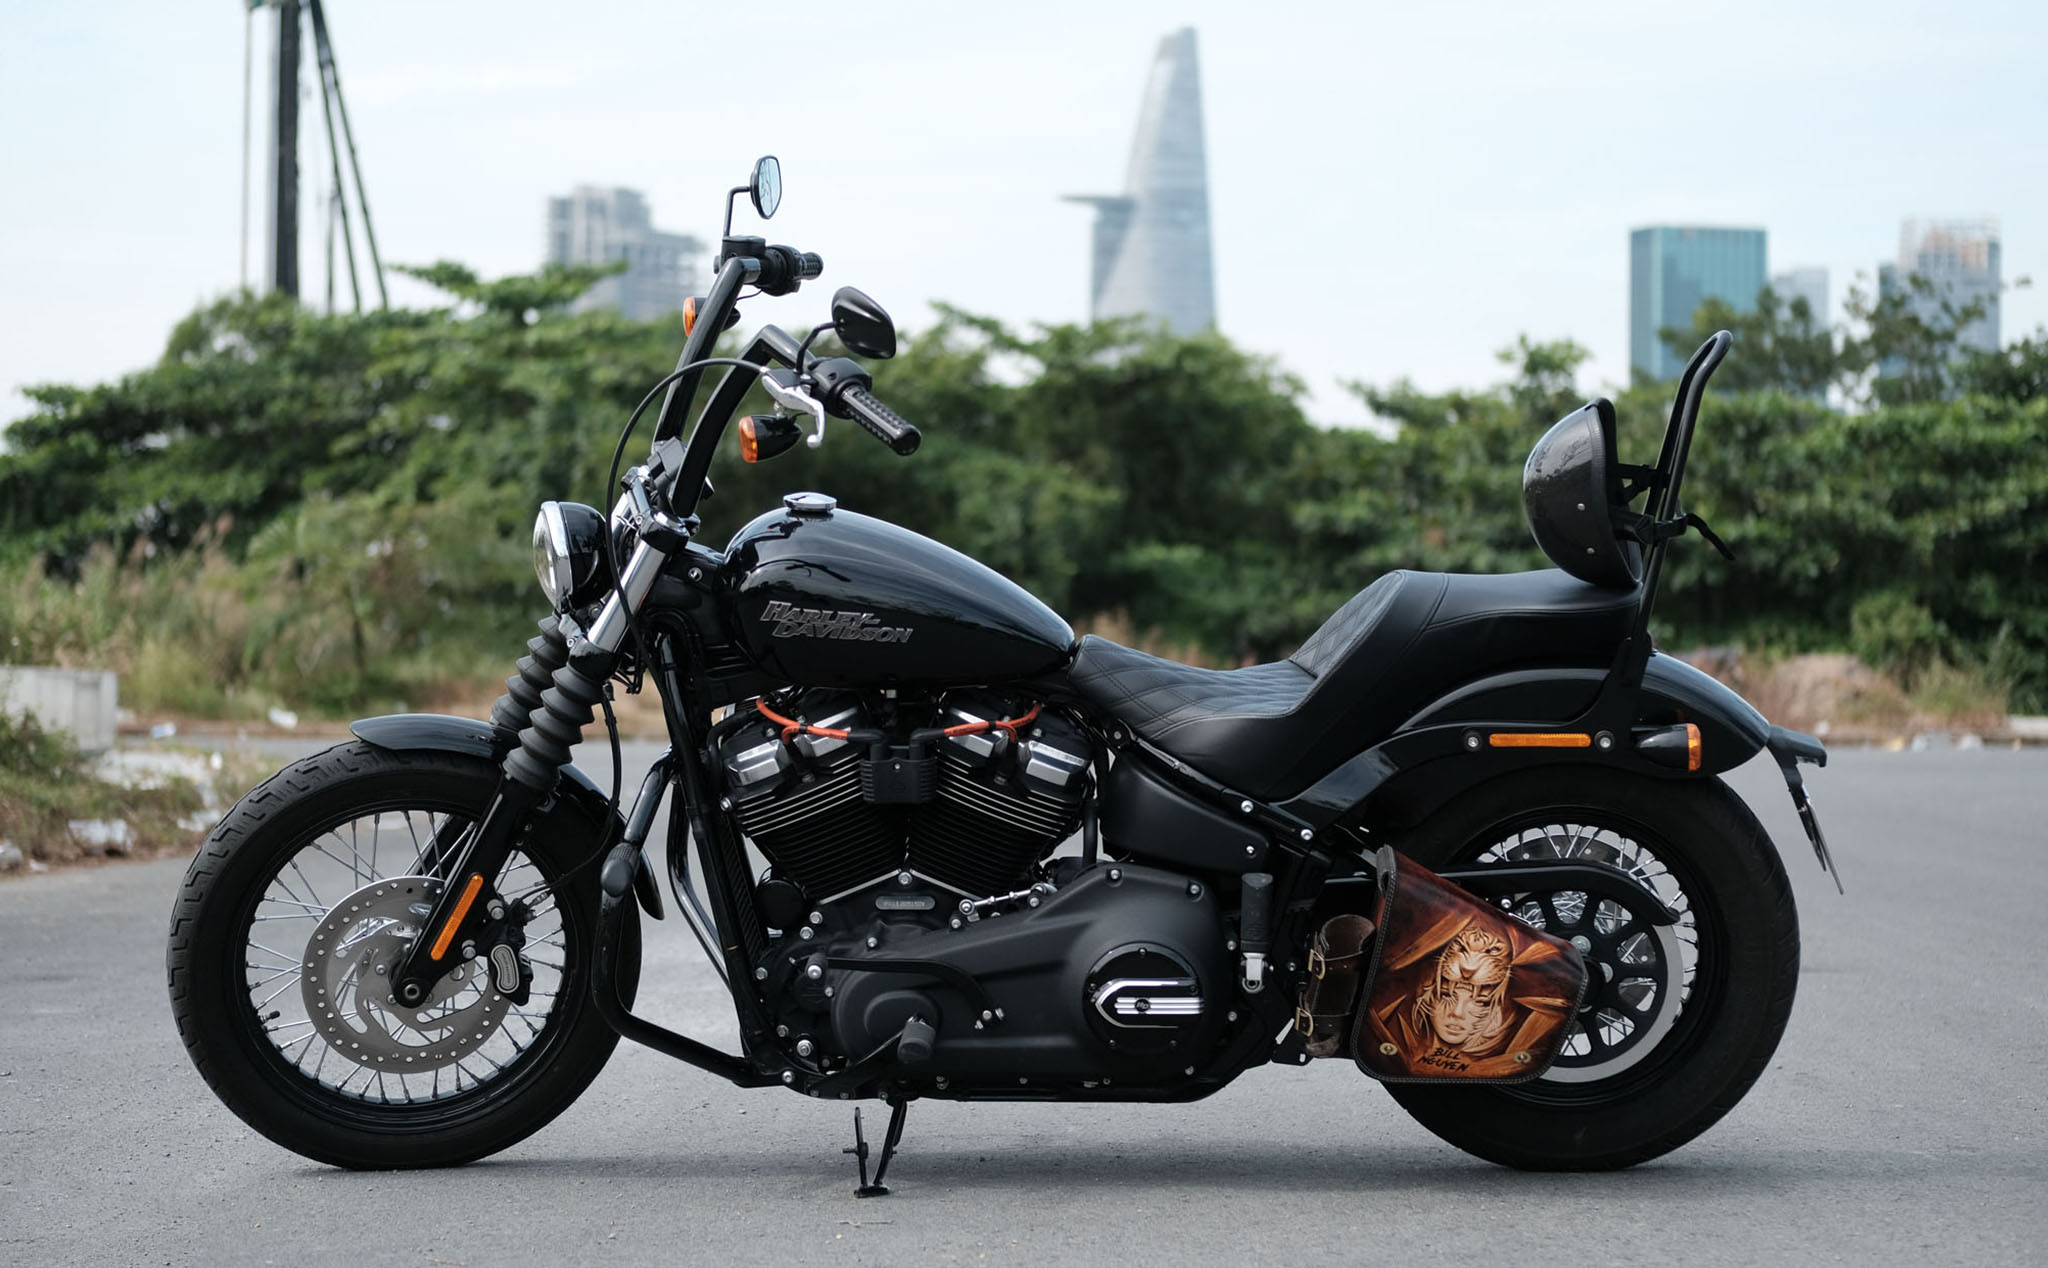 Trên tay Harley-Davidson Street Bob 2020: một chiếc bobber ngon lành, giá khoảng 600 triệu đồng